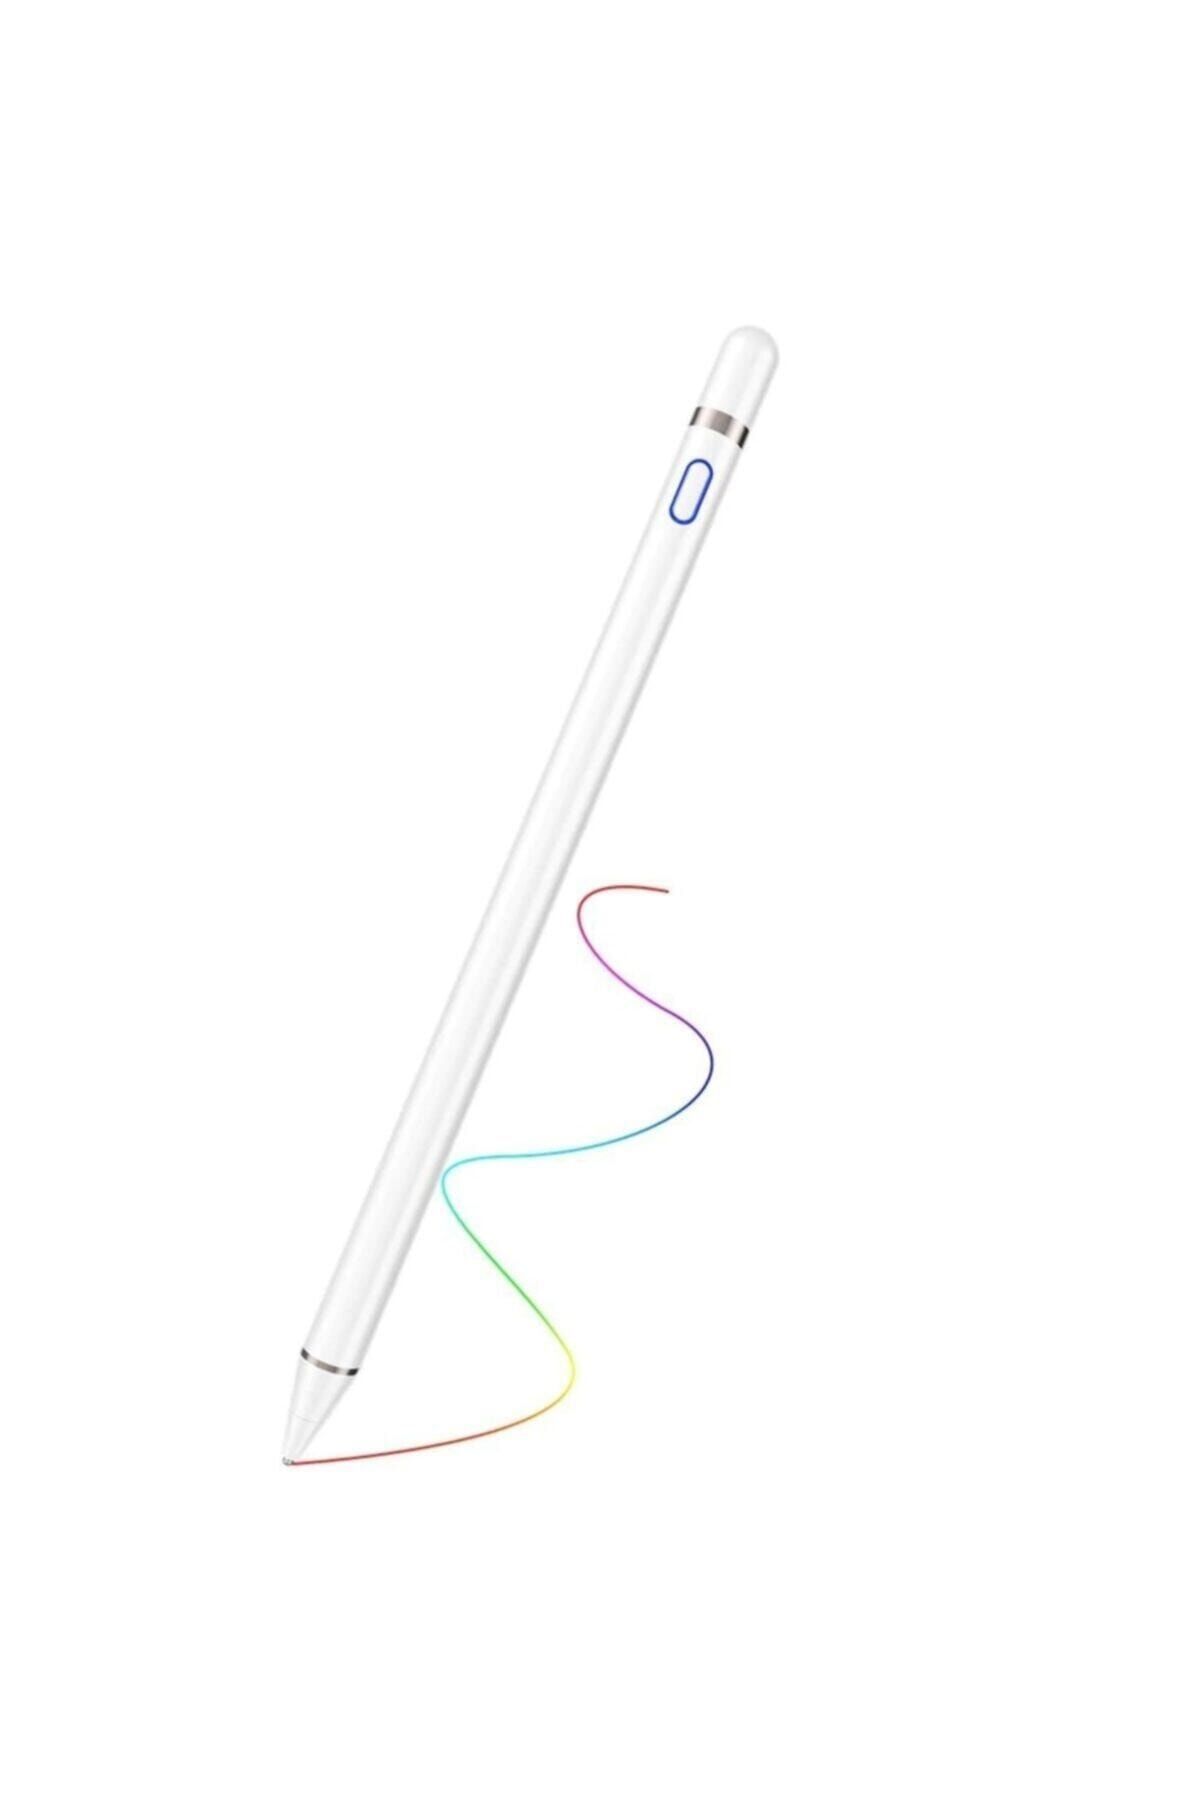 MOBAX Stylus Kapasitif Dokunmatik Kalem Tüm Cihazlar Telefon Ile Uyumlu Çizim Tasarım Tablet Kalemi